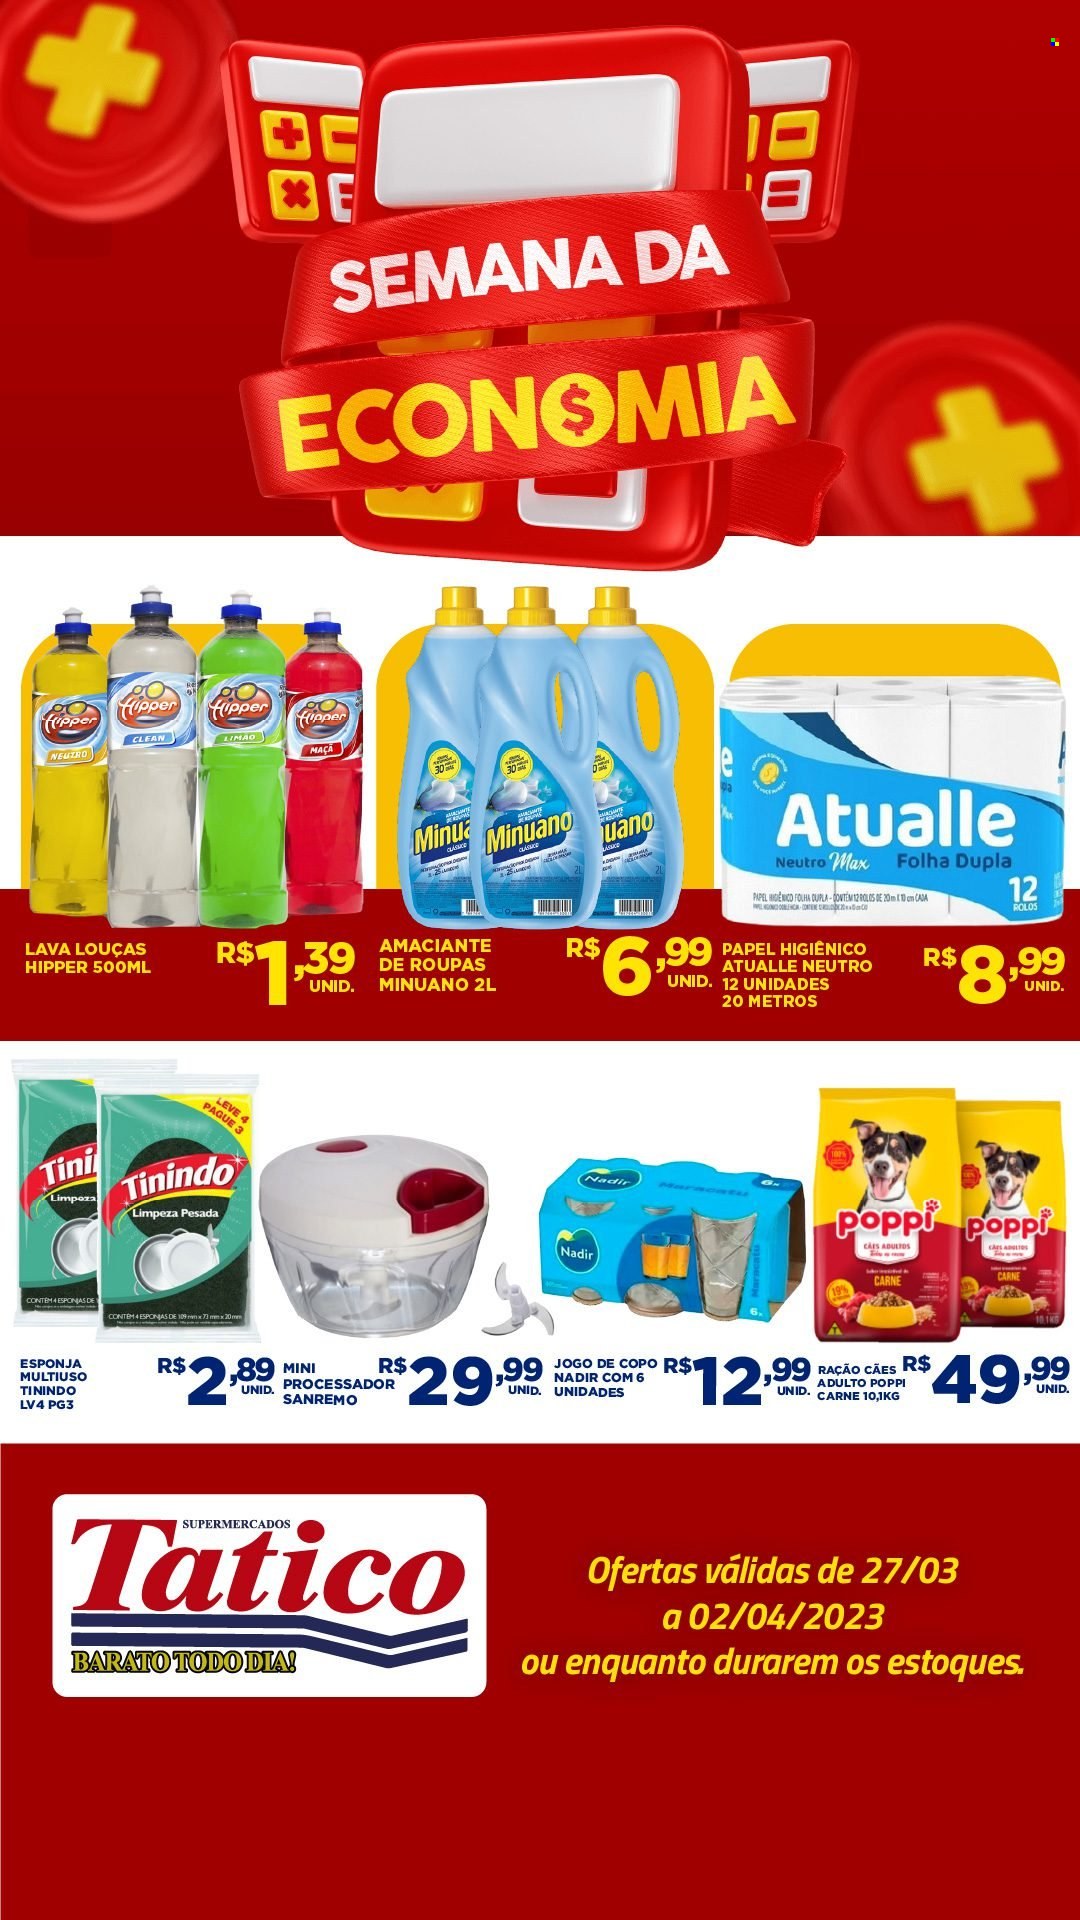 Encarte Supermercados Tatico  - 27.03.2023 - 02.04.2023.